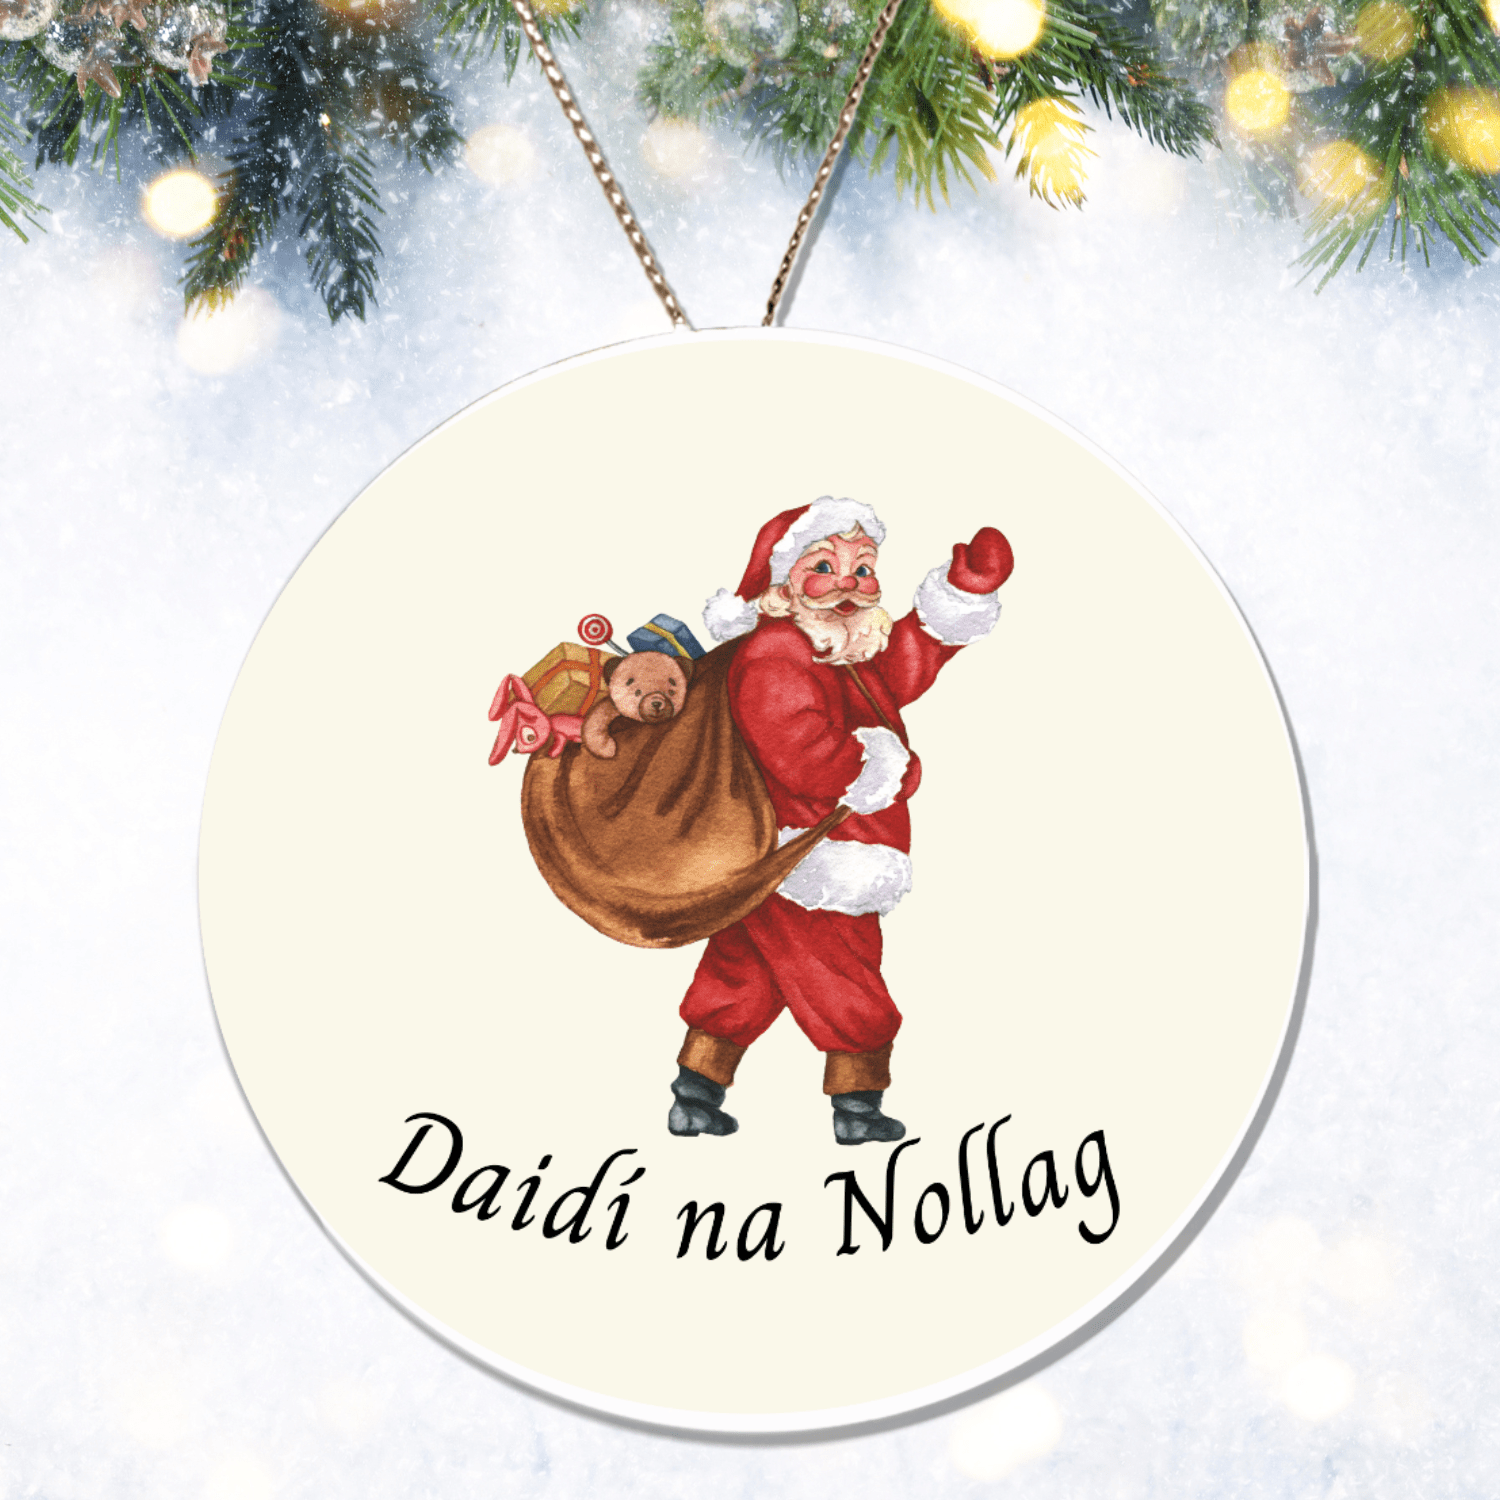 Irish Santa Gaelic Christmas Ornament